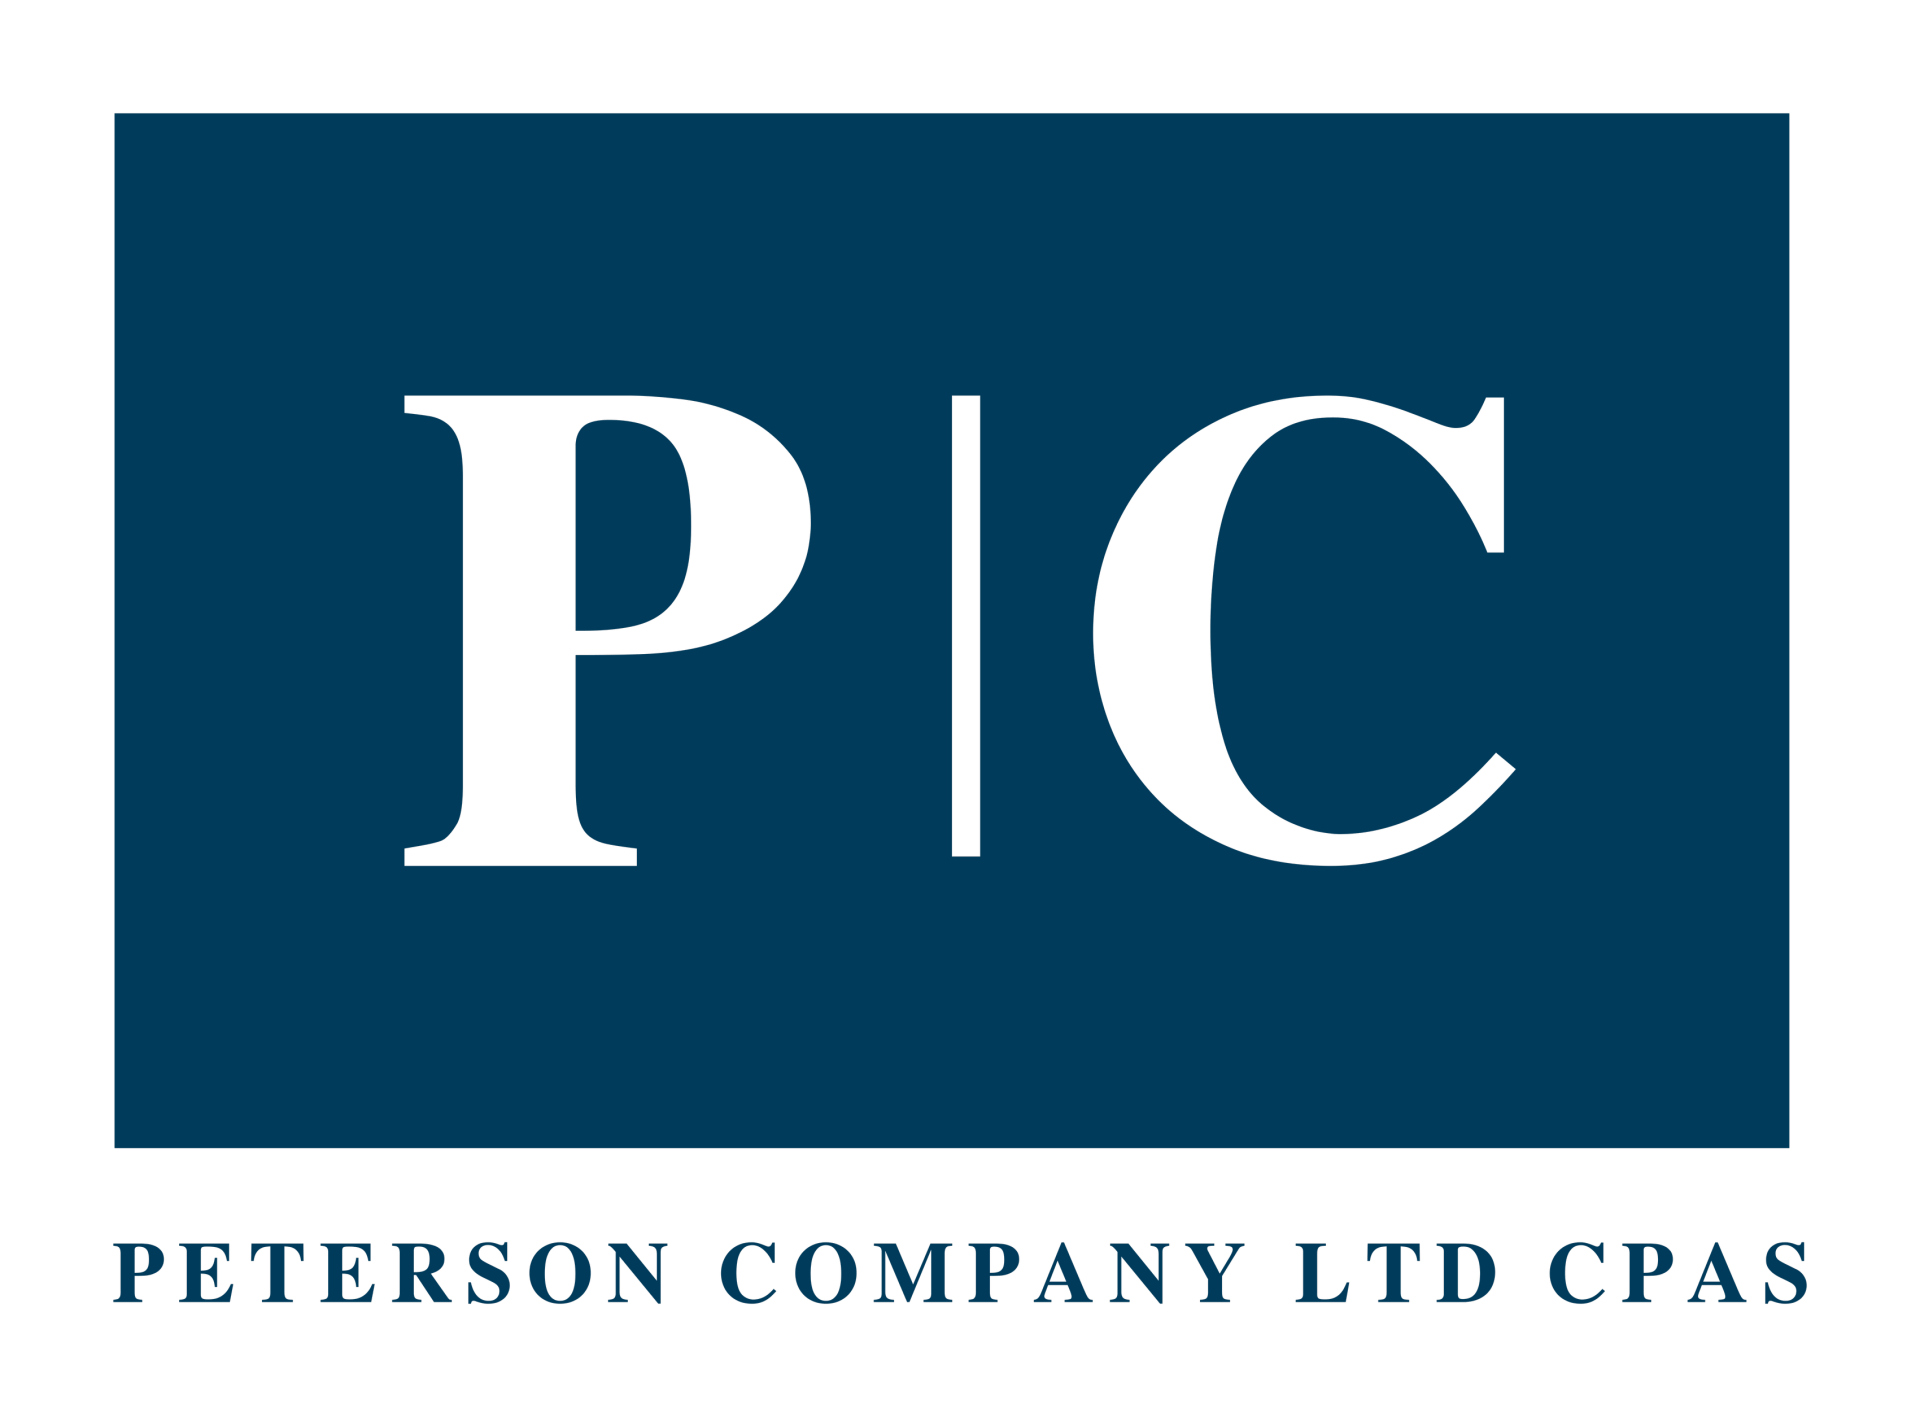 peterson company logo